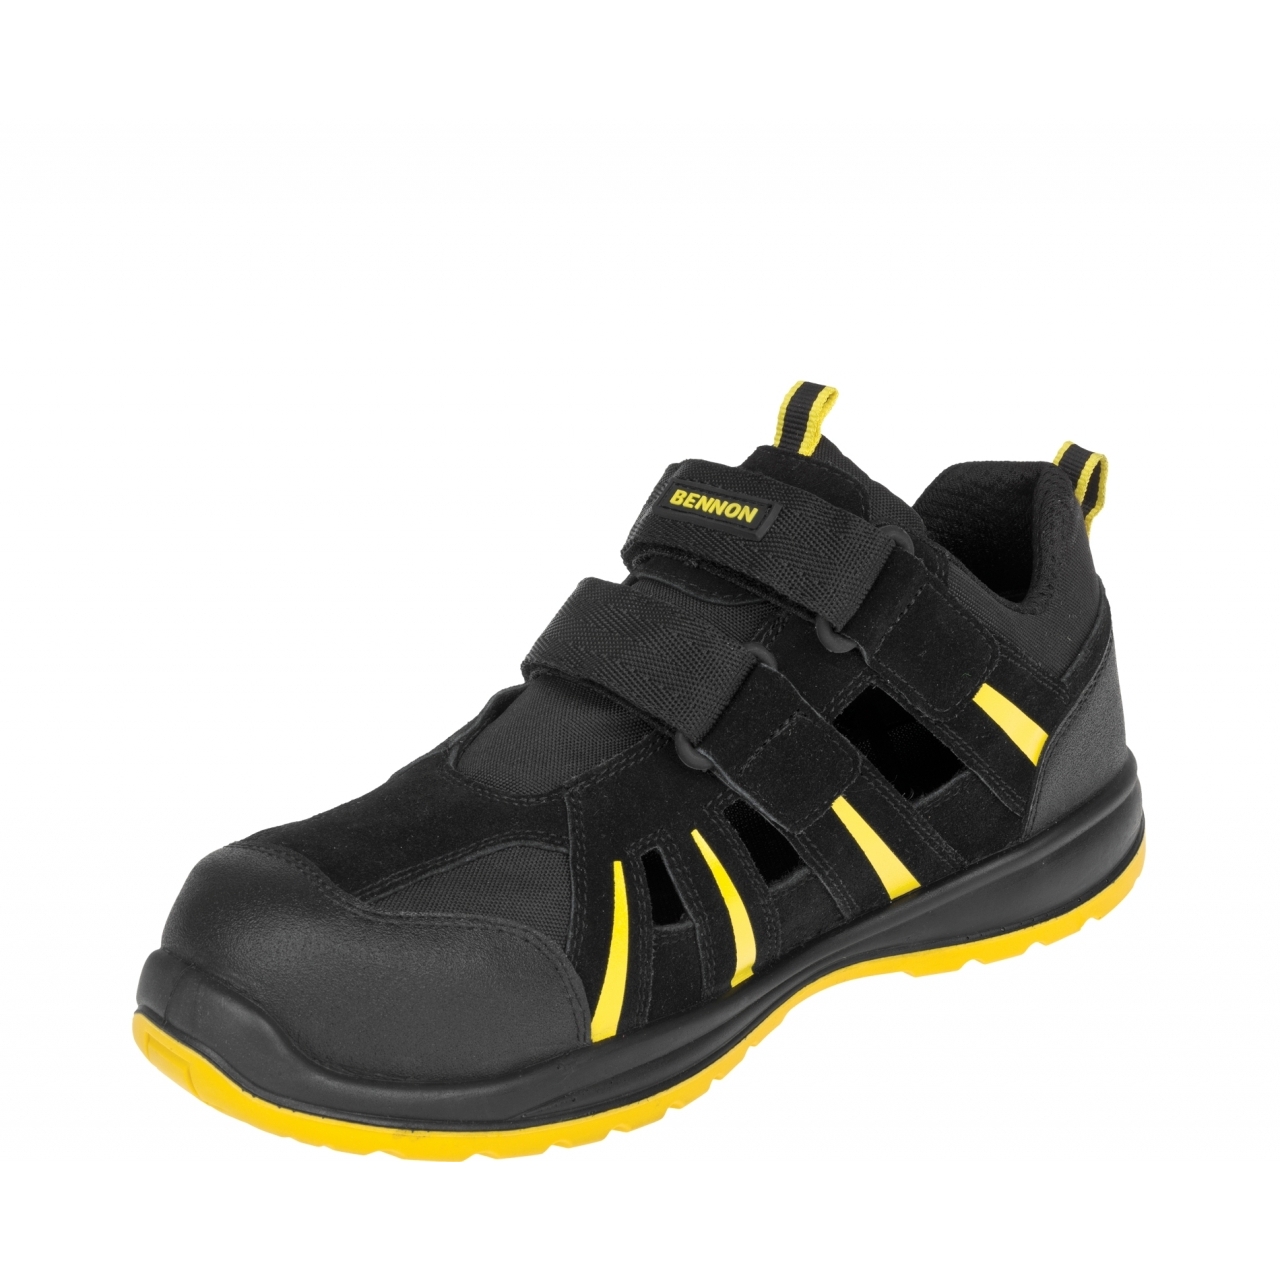 Sandále Bennon Ribbon S1 ESD - černé-žluté, 37